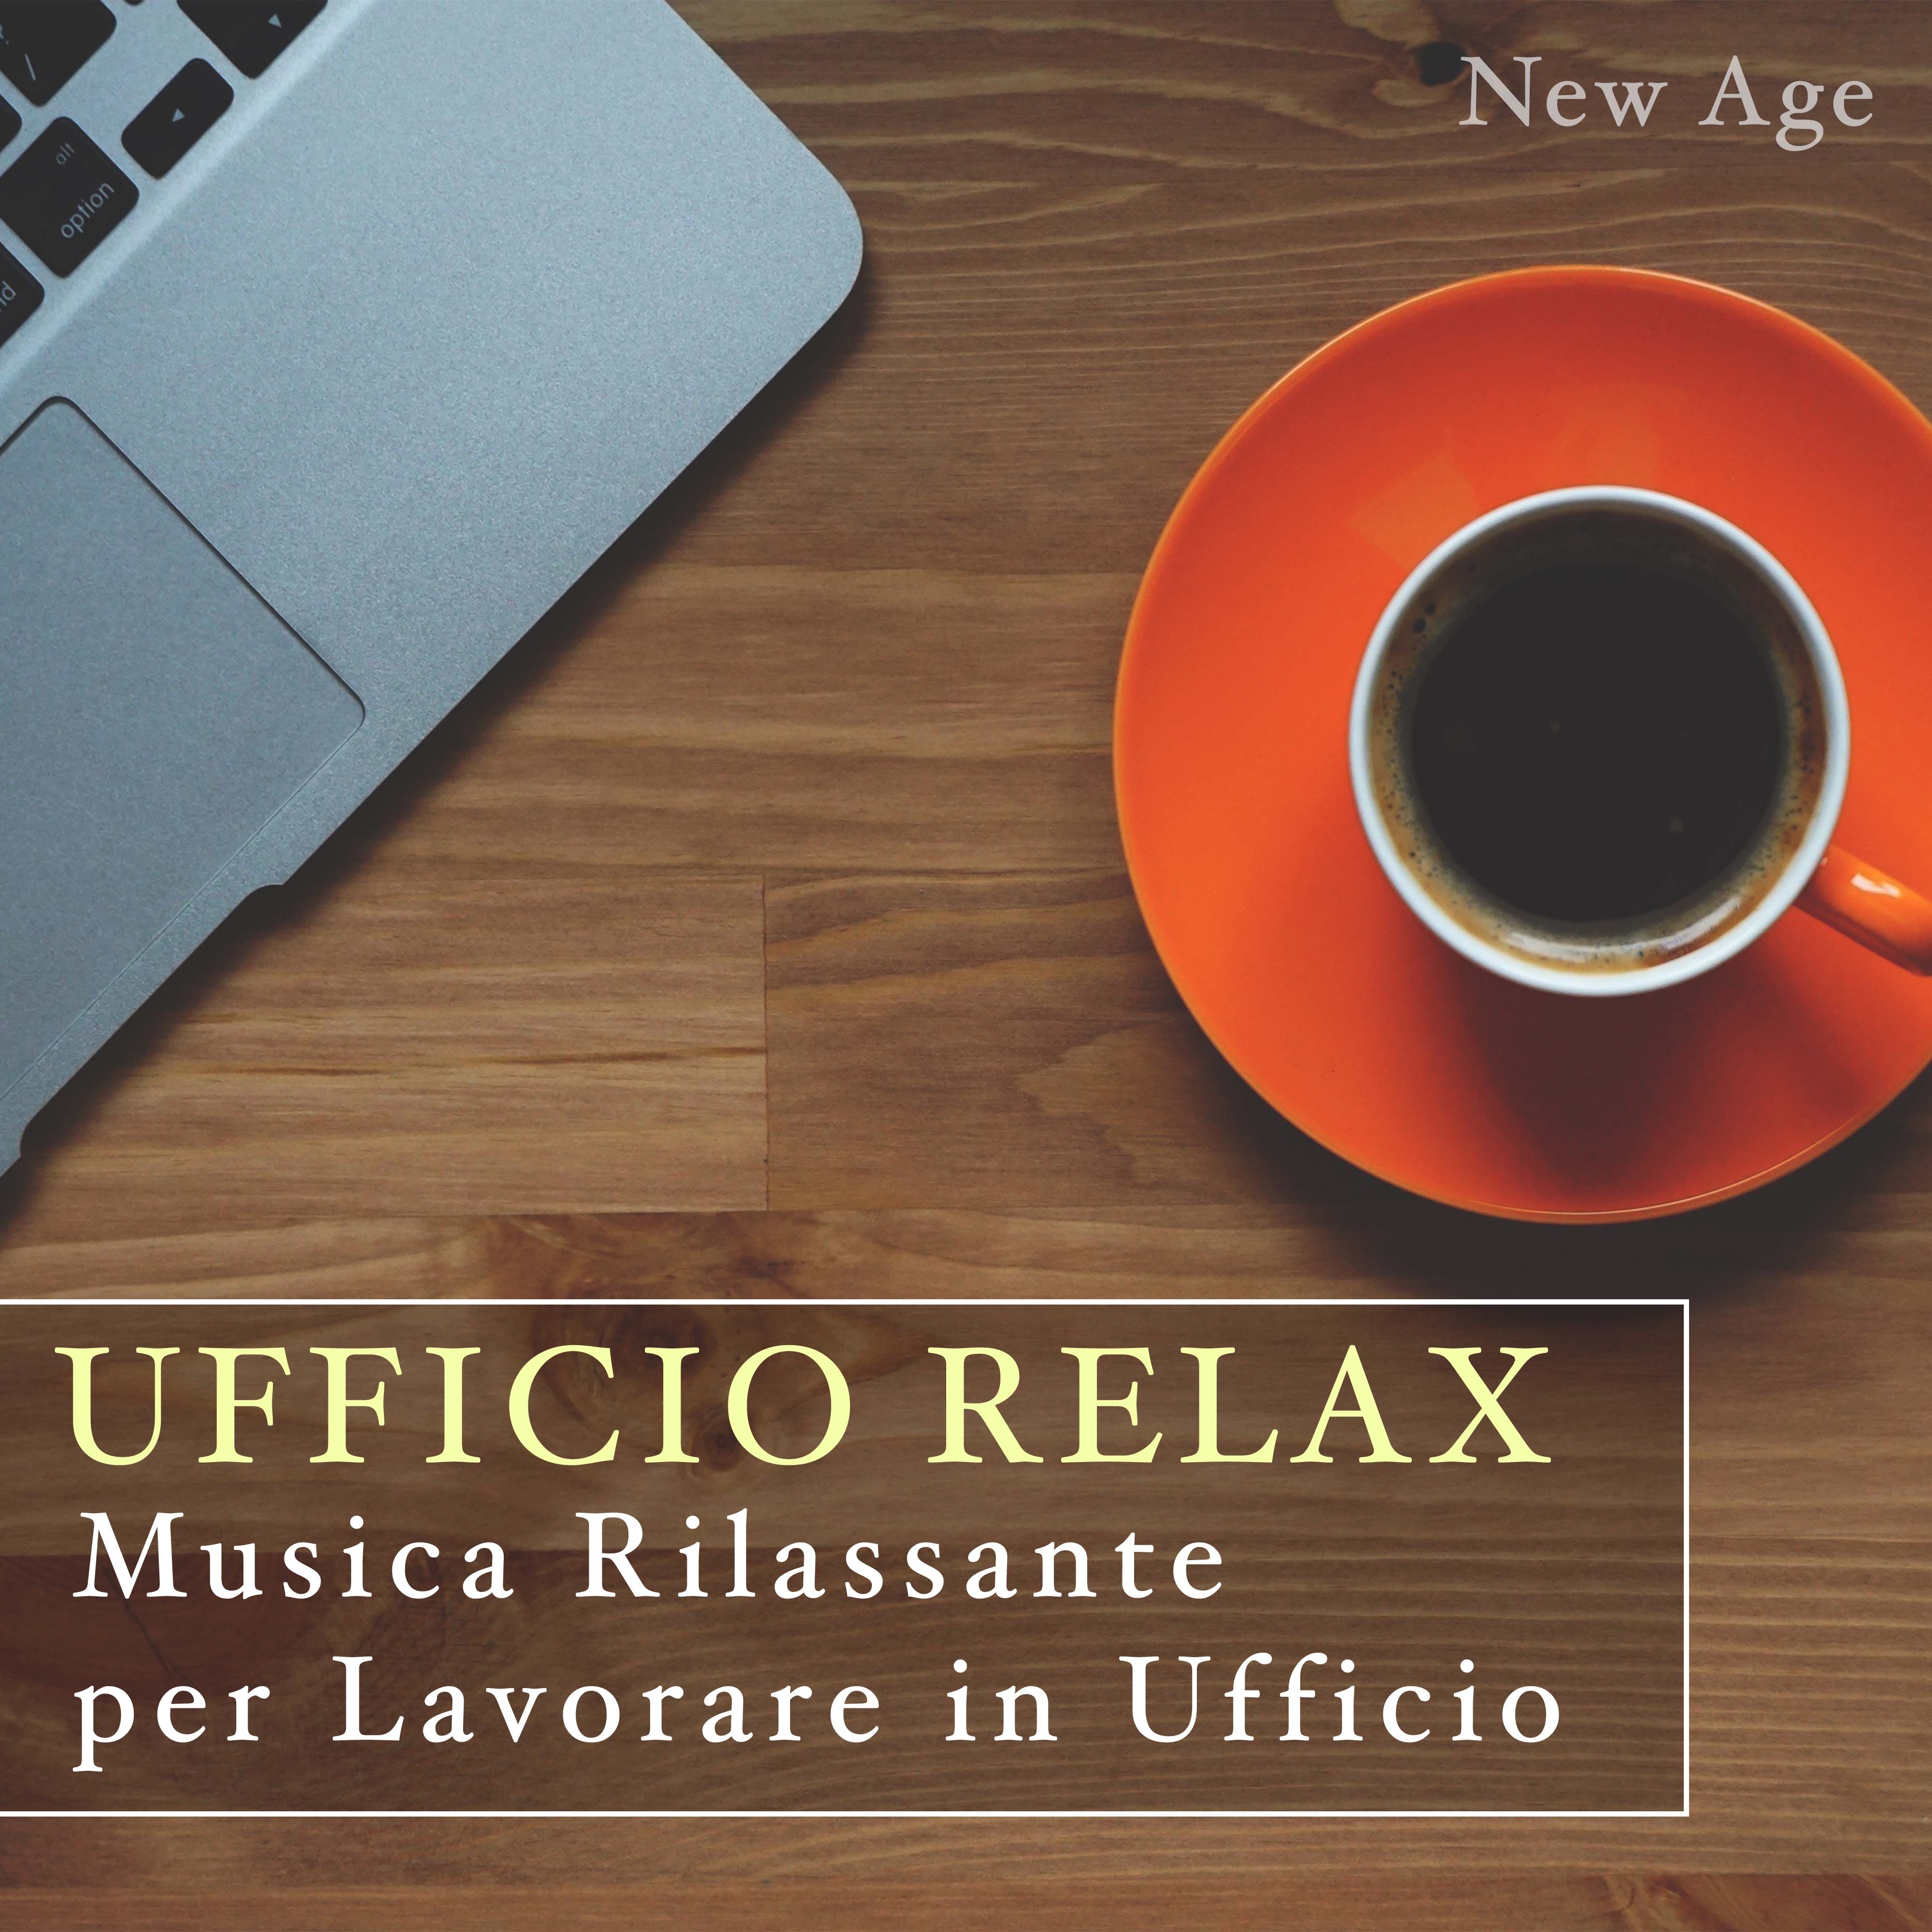 Ufficio Relax - Musica Rilassante per Lavorare in Ufficio